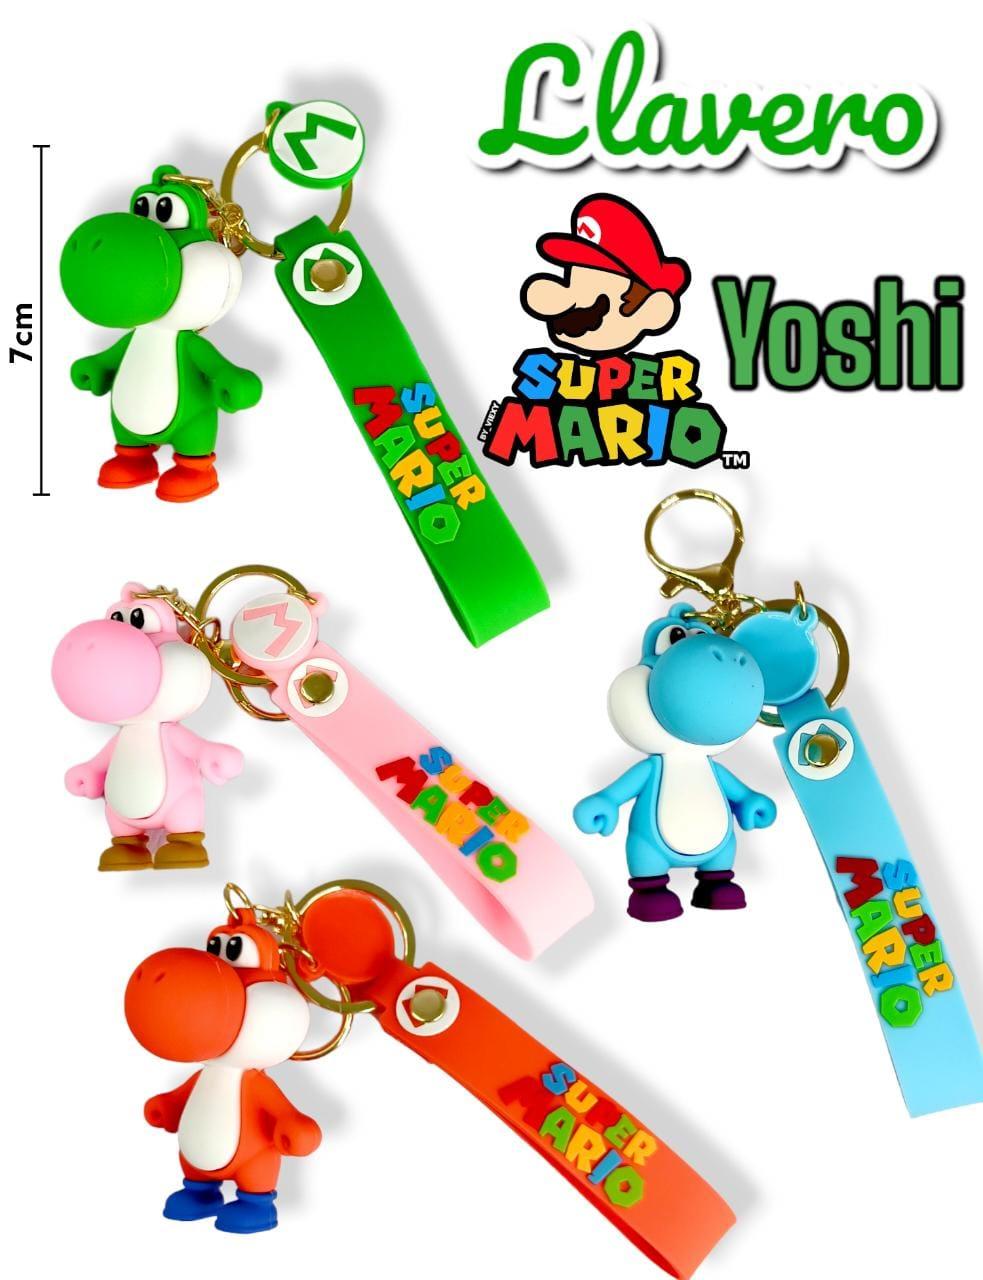 Llavero Premium Super Mario Bross Yoshi 7Cm